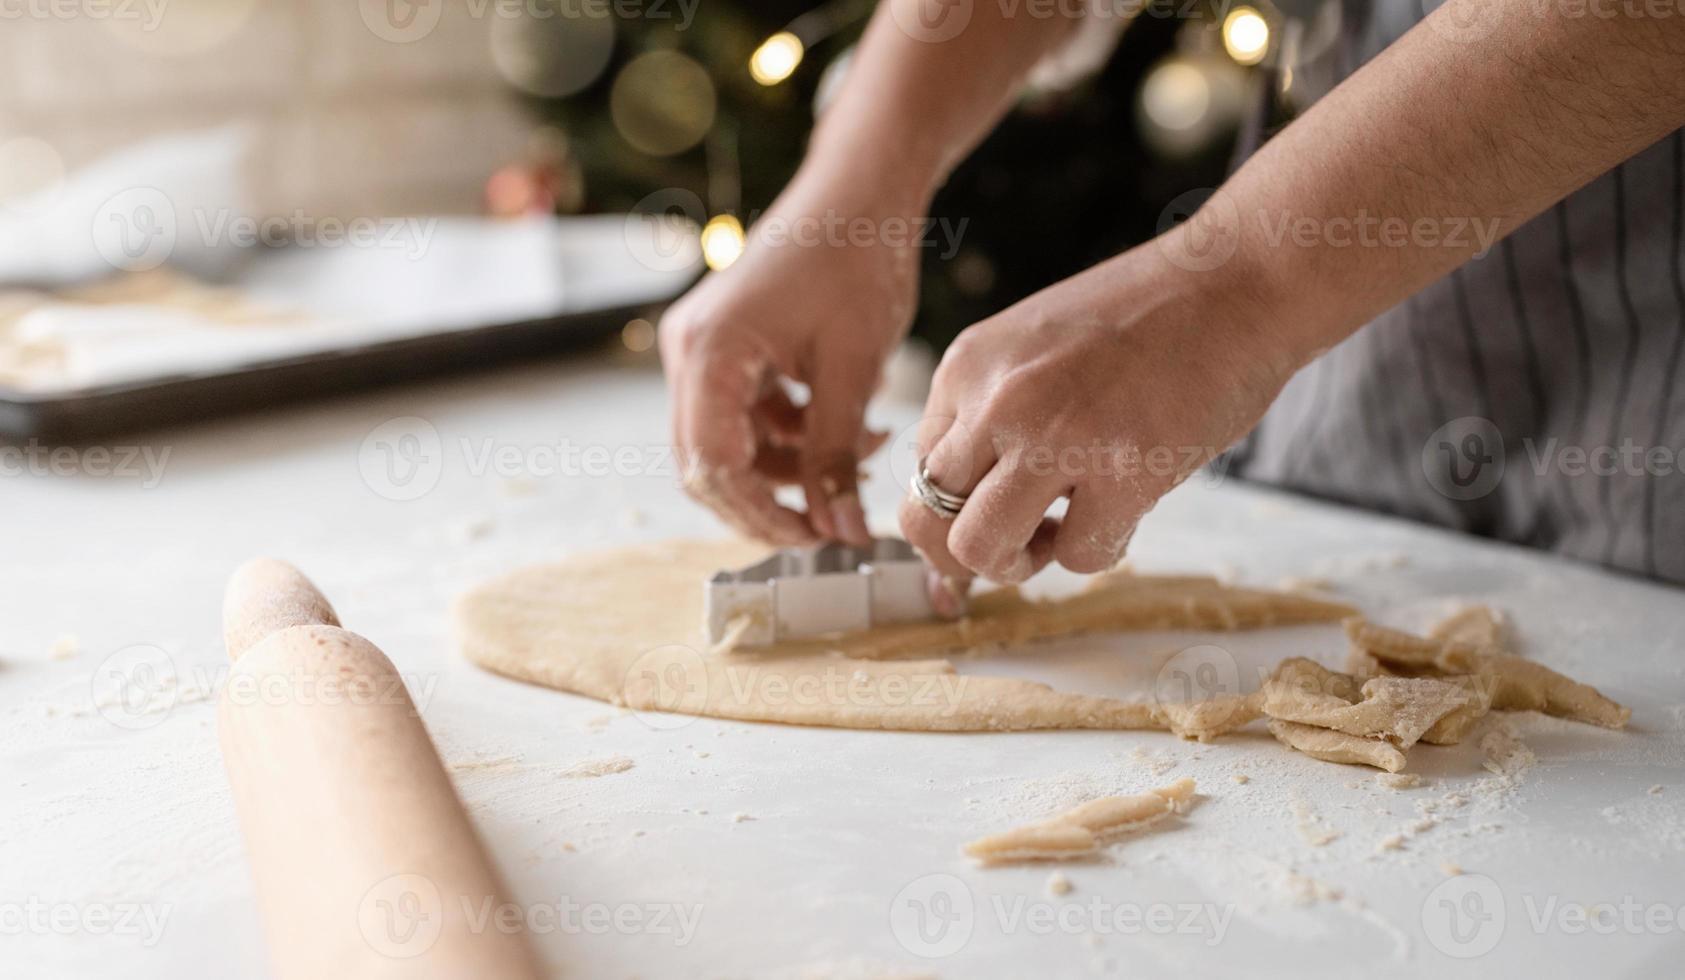 mulher sorridente na cozinha fazendo biscoitos de natal foto